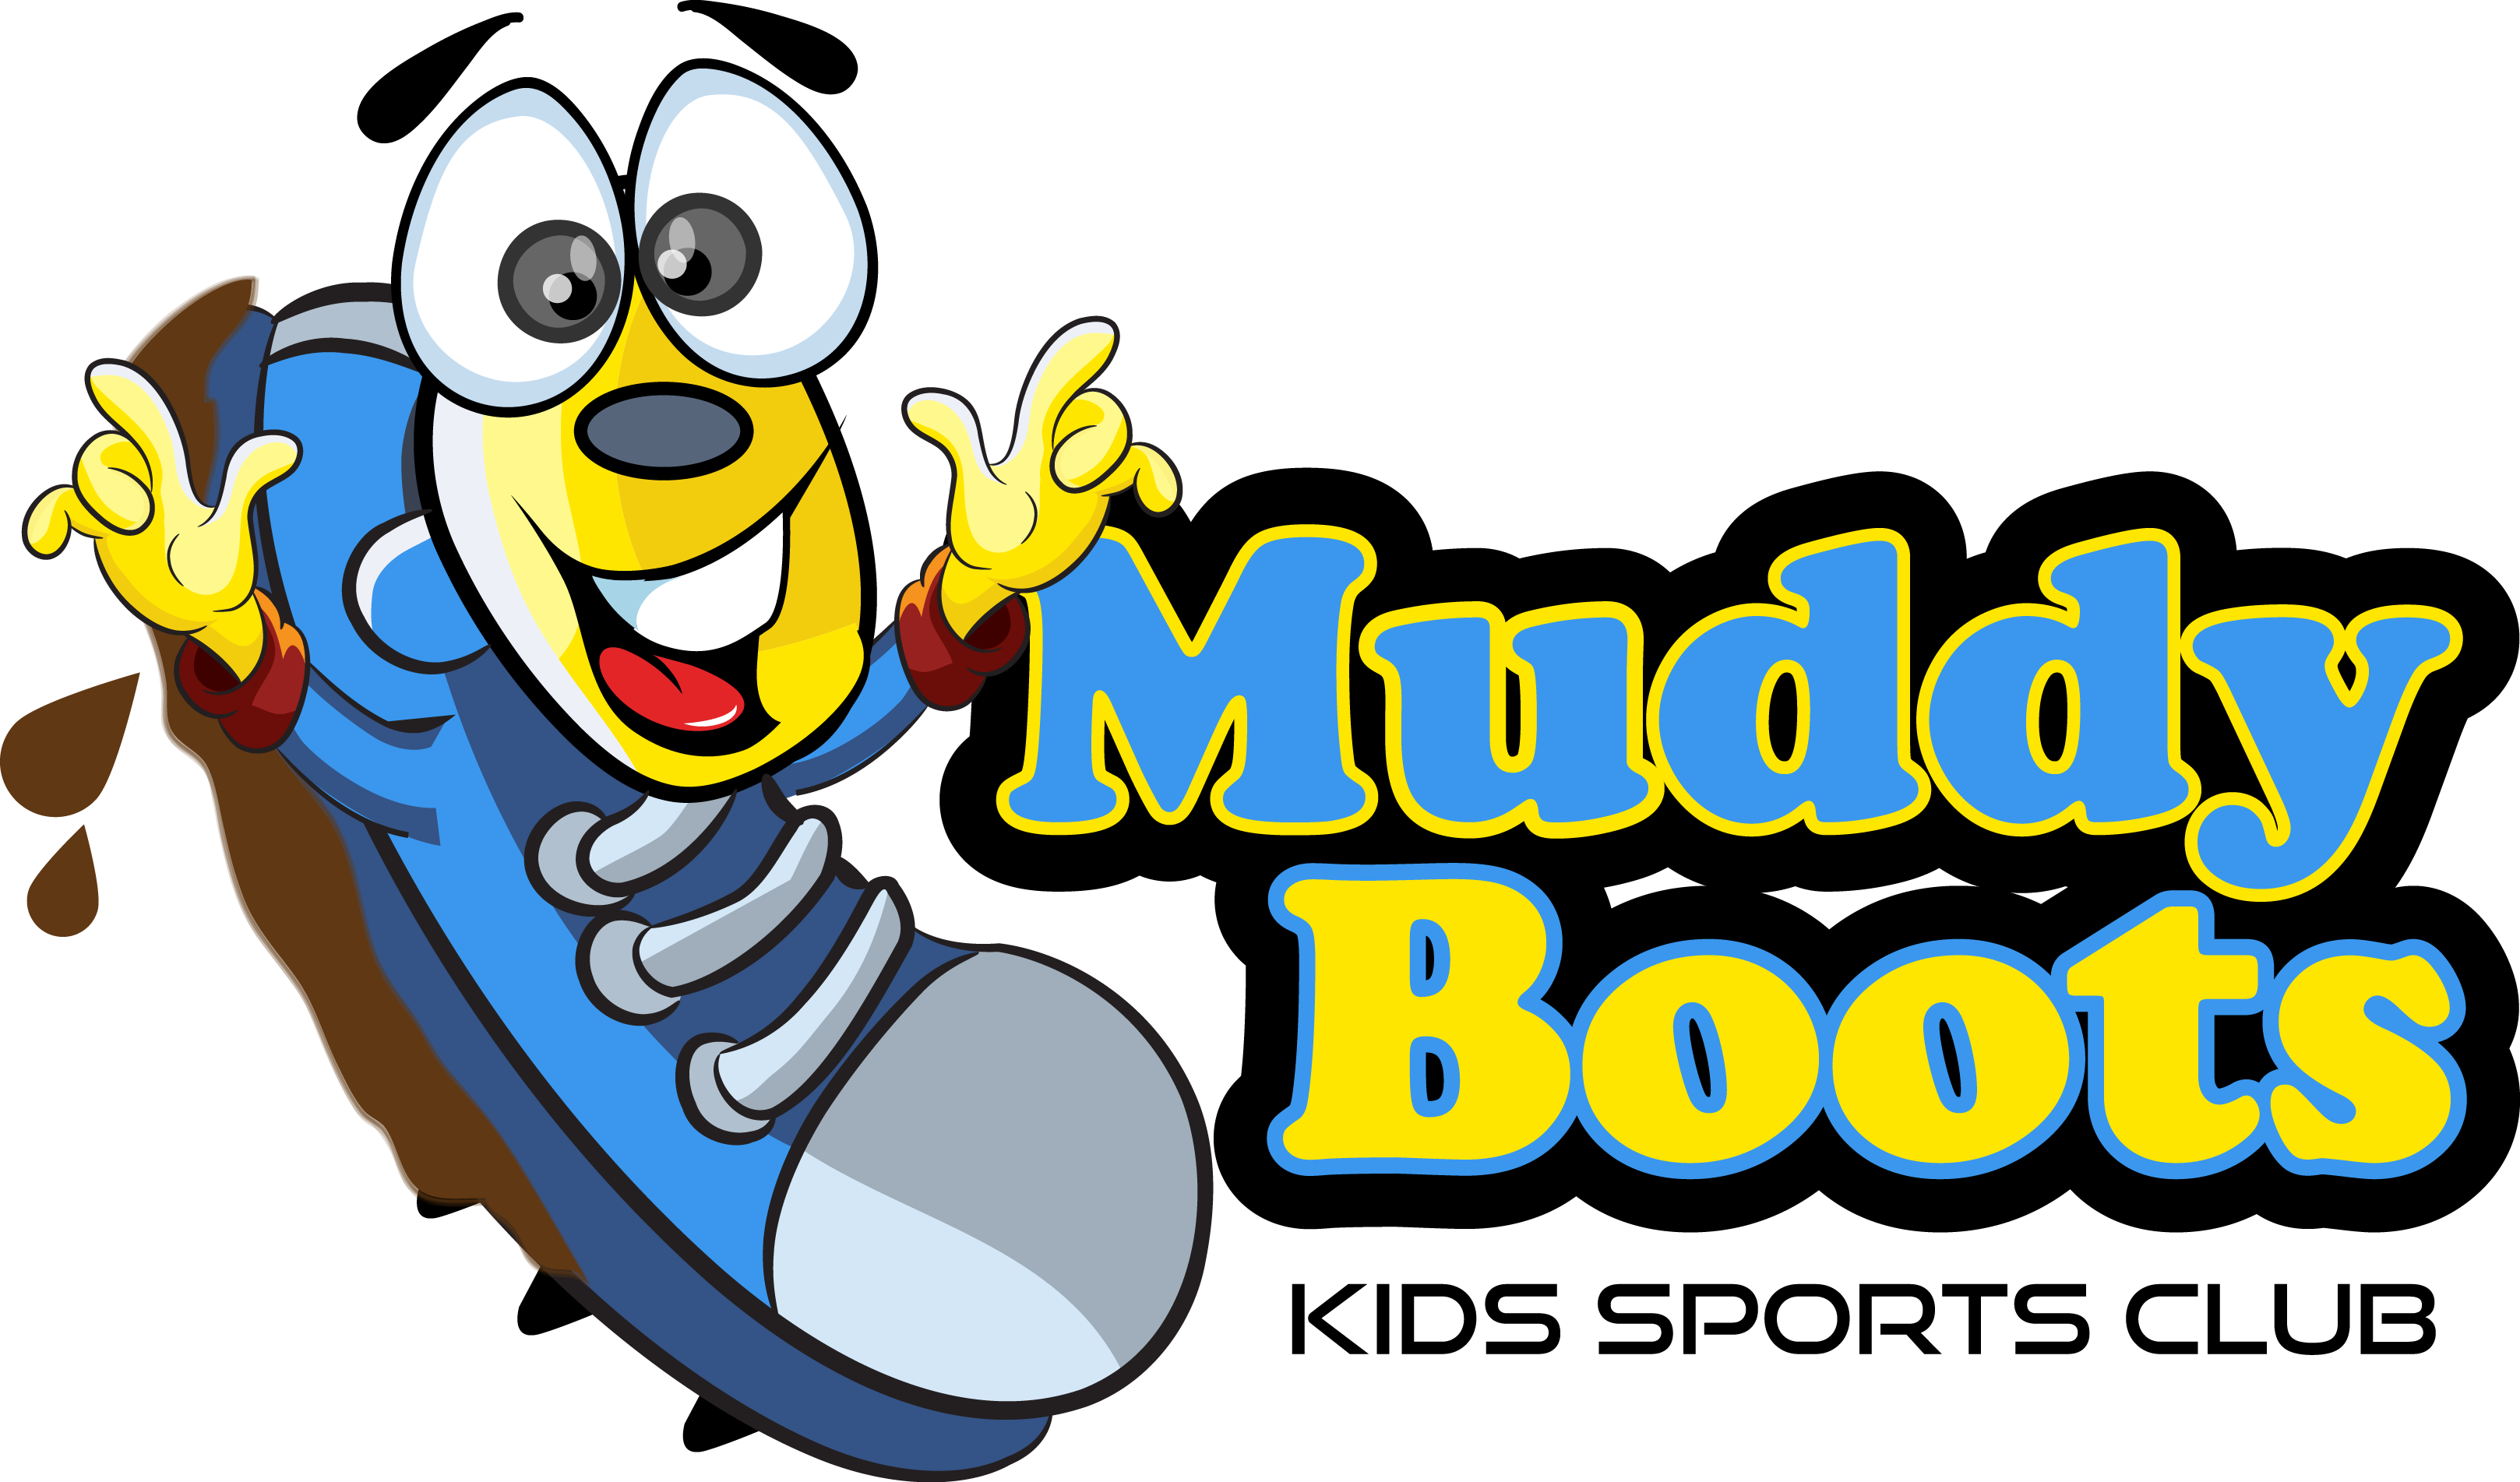 Muddy Boots Kids Sports Club - Muddy Boots Kids Sports Club (3235x1903)